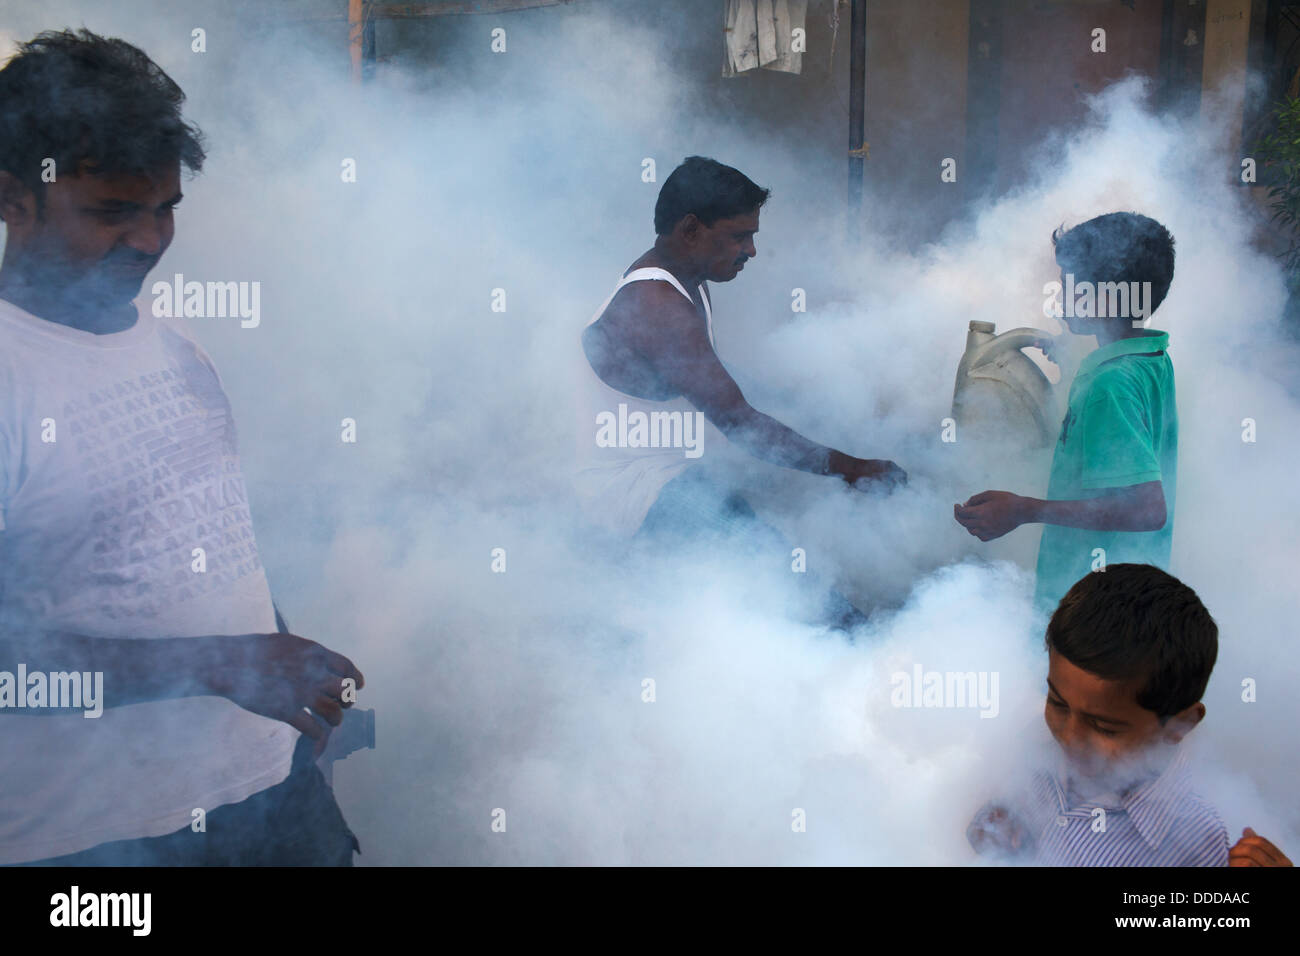 Fumigation against mosquitoes in a slum in Mumbai, India Stock Photo